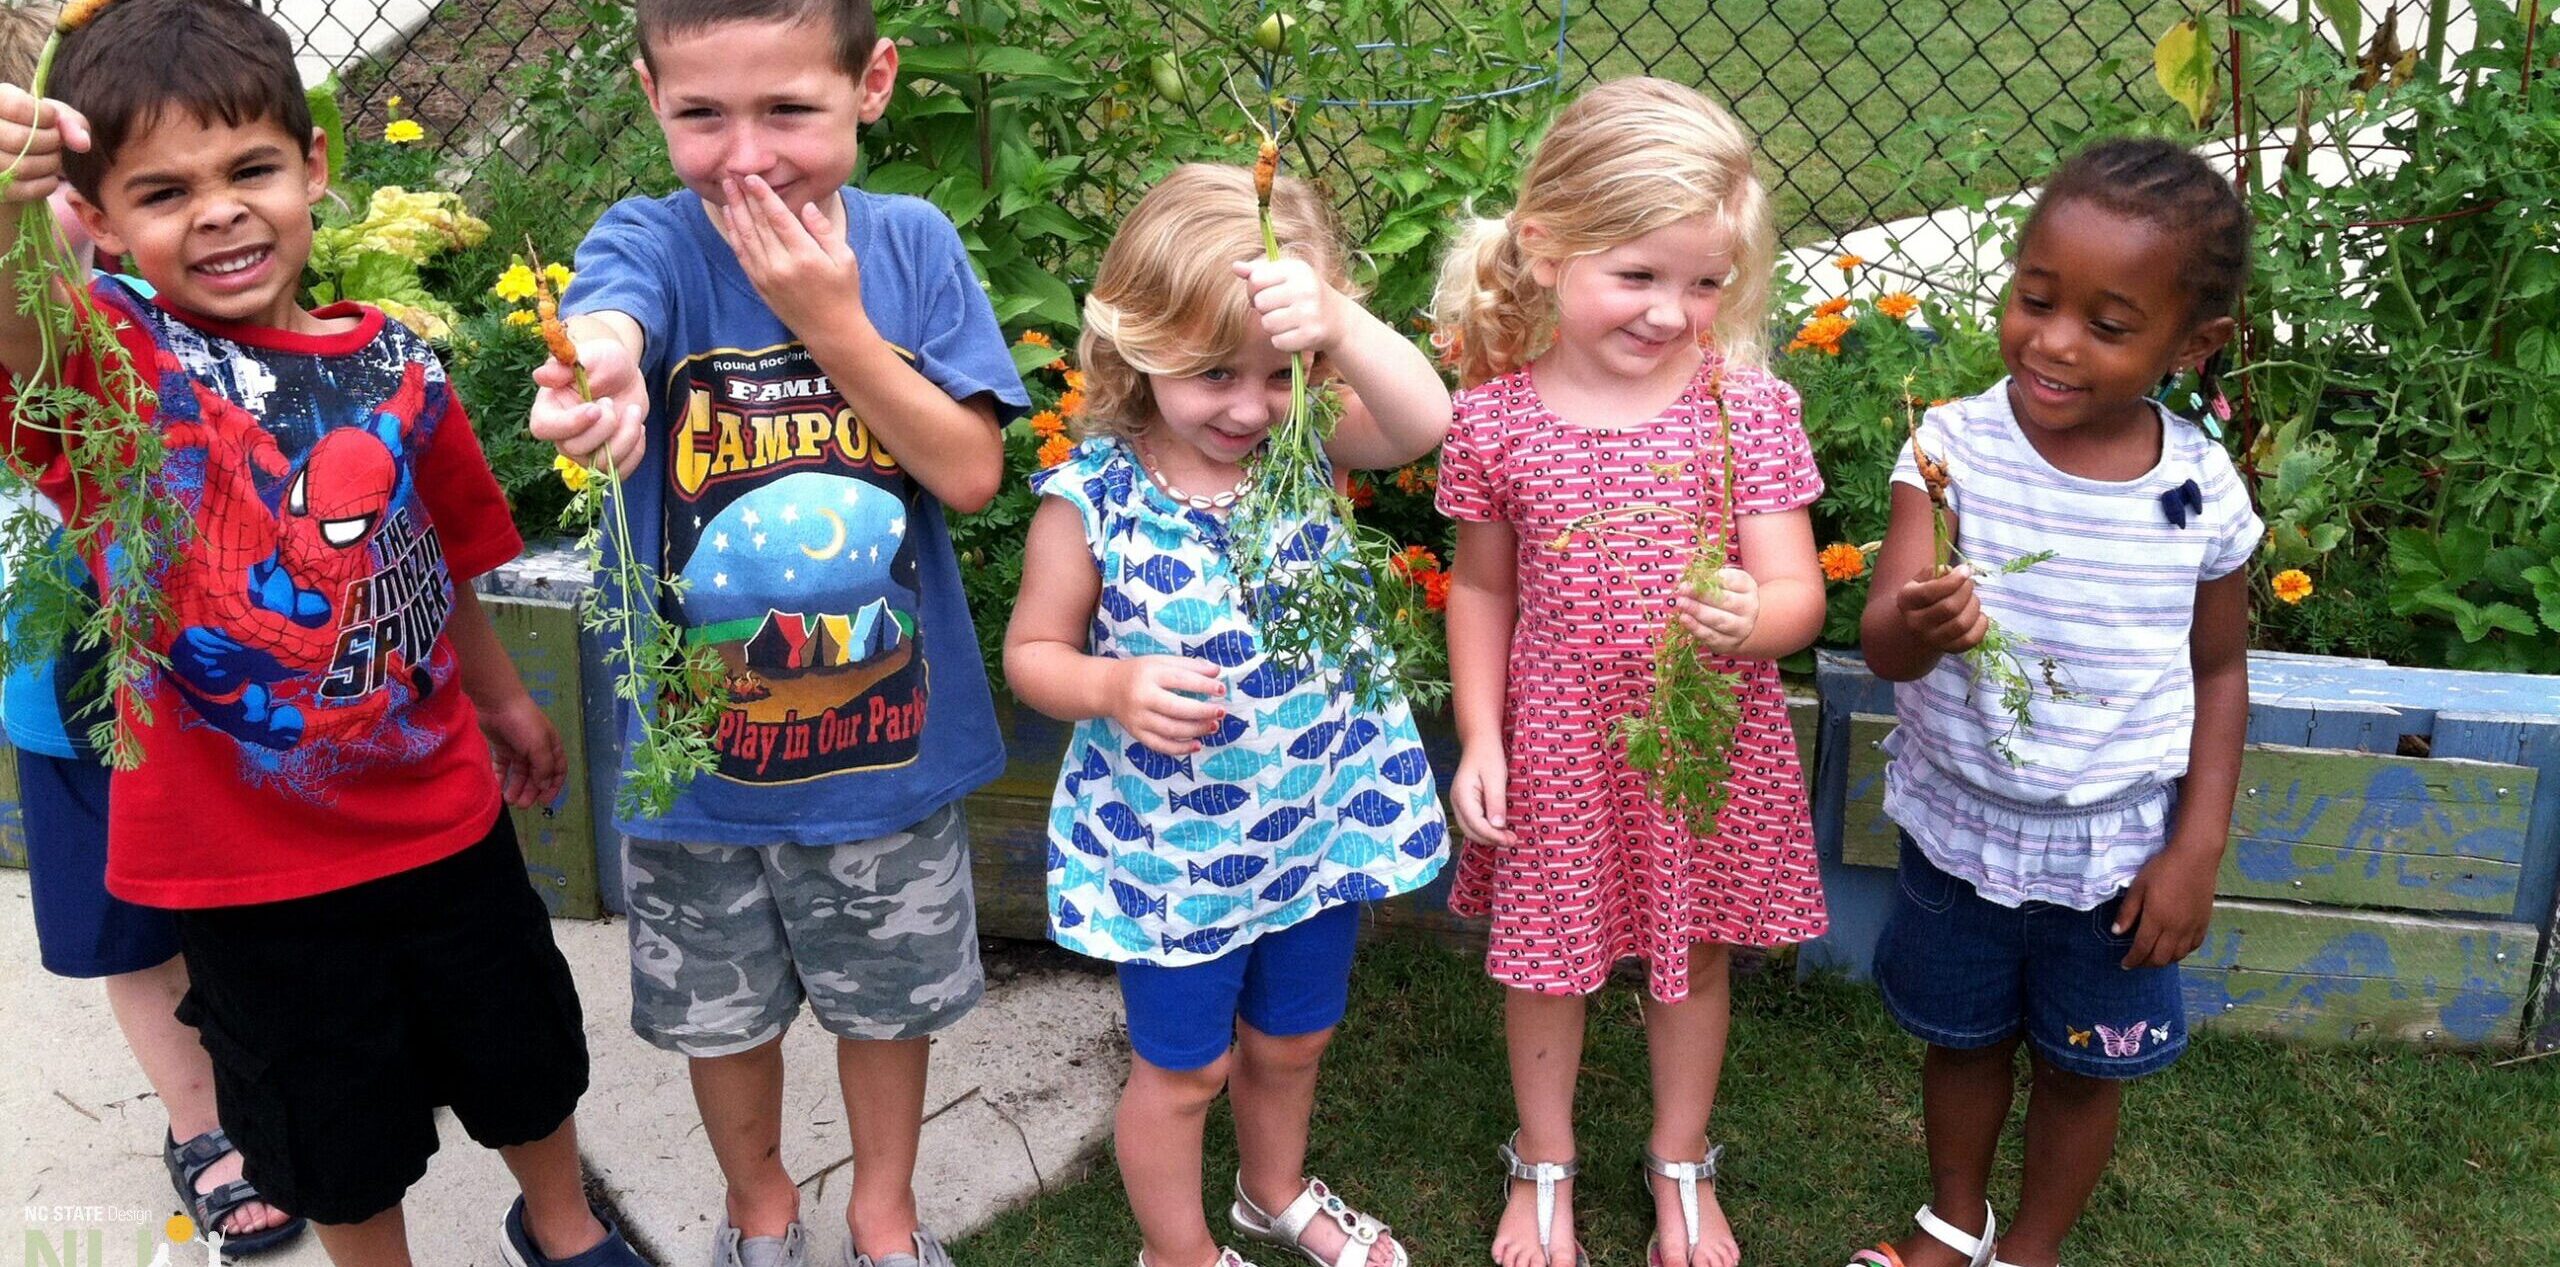 children holding harvested carrots